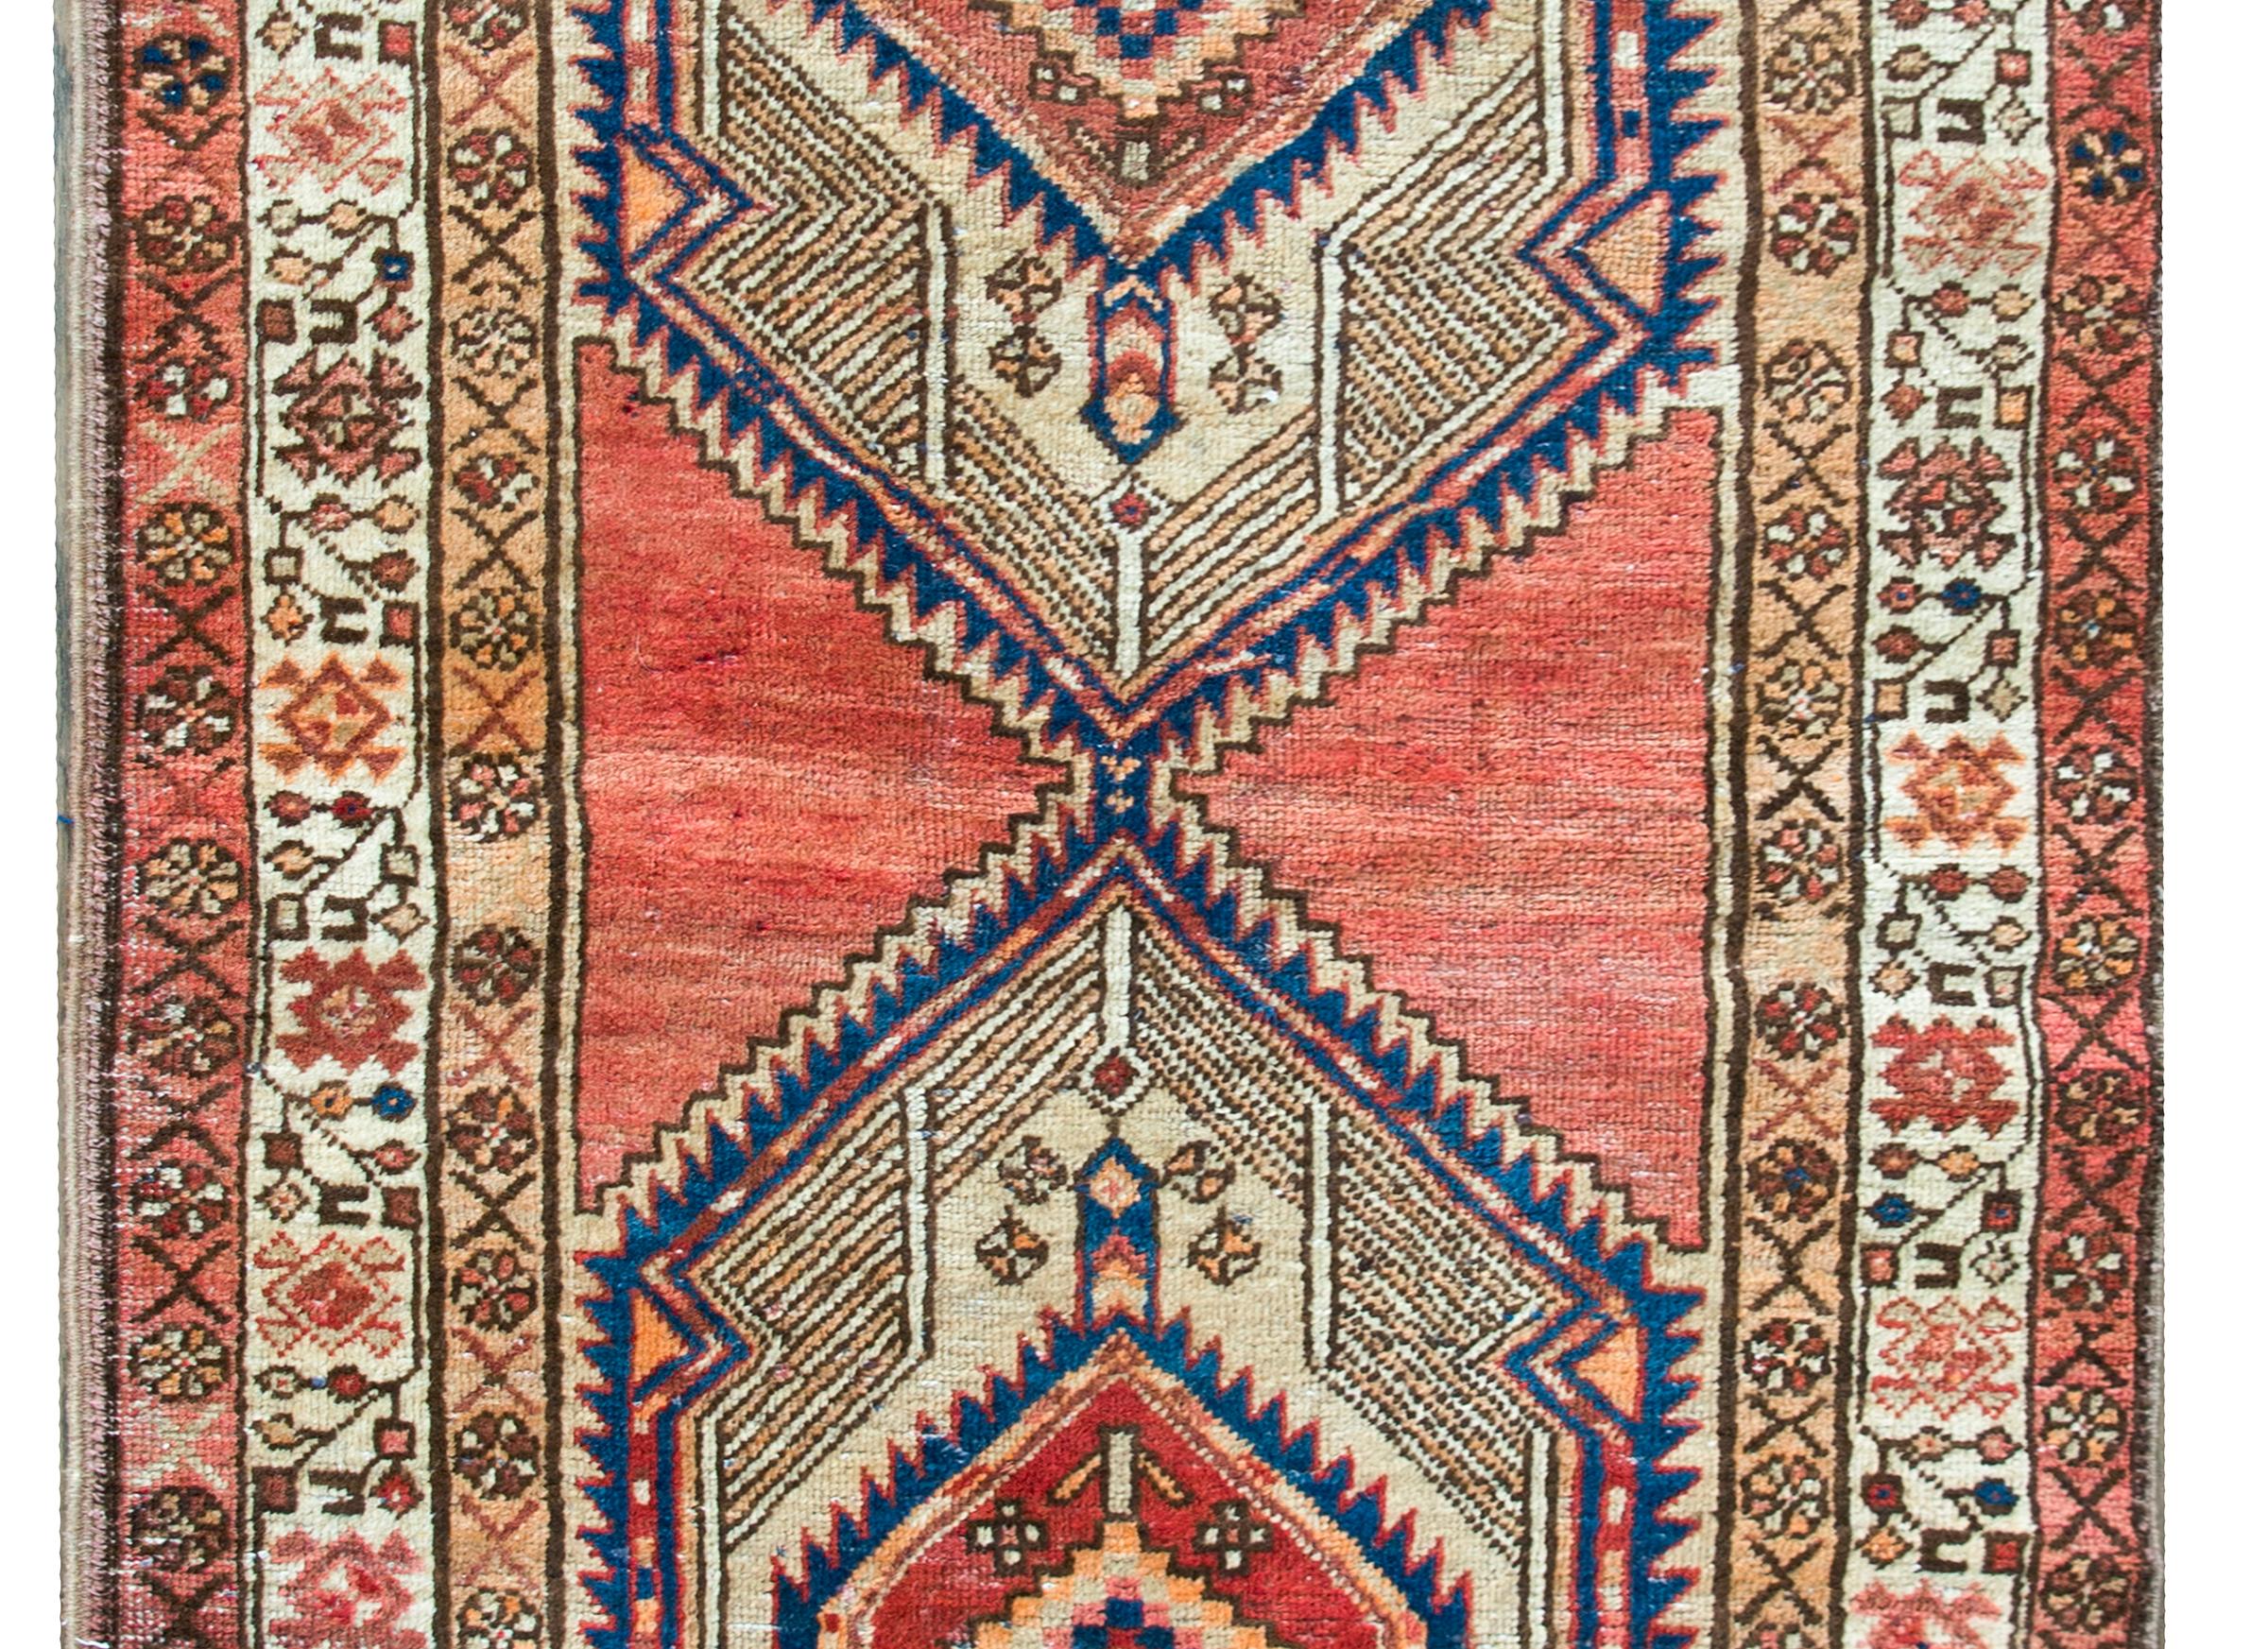 Fantastique tapis persan Serab du milieu du 20e siècle, avec deux grands médaillons centraux en forme de diamant, chacun avec une fleur centrale stylisée et entouré de motifs géométriques.  La bordure est complexe, avec trois bordures stylisées à